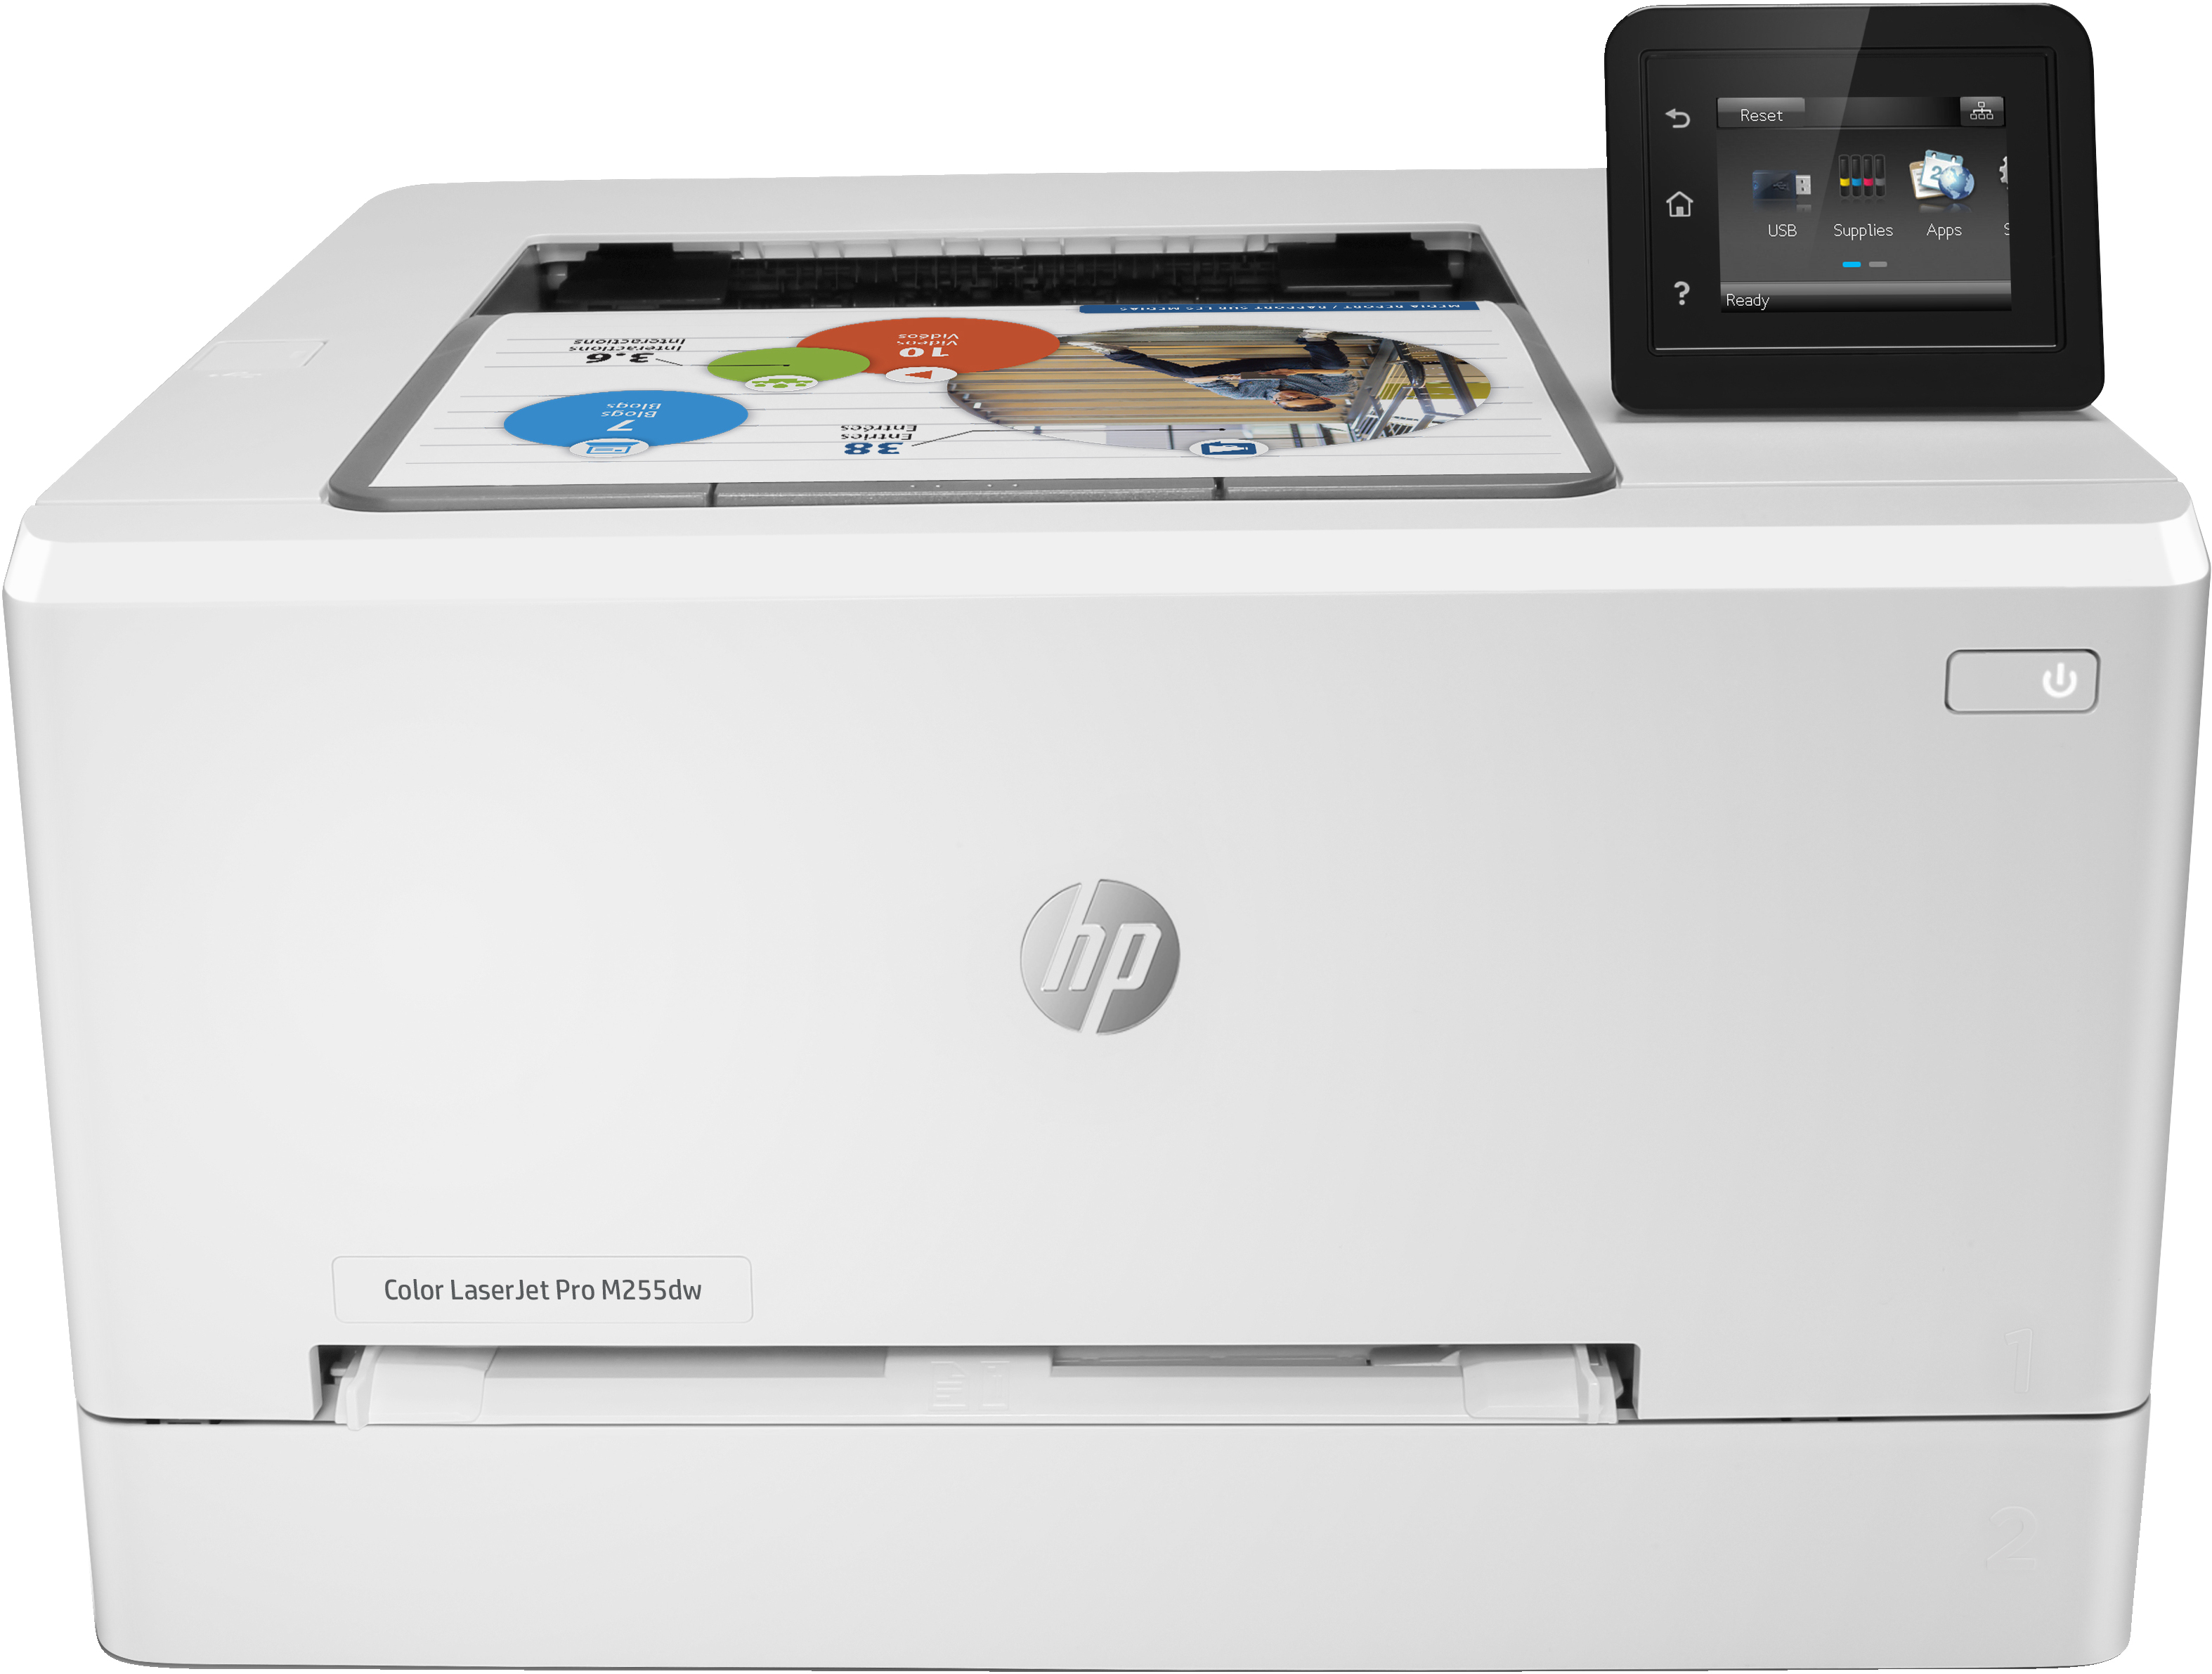 HP Color LaserJet Pro M255dw, Color, Skrivare för Utskrift, Dubbelsidig utskrift; Energieffektiv; Hög säkerhet; Dual band Wi-Fi